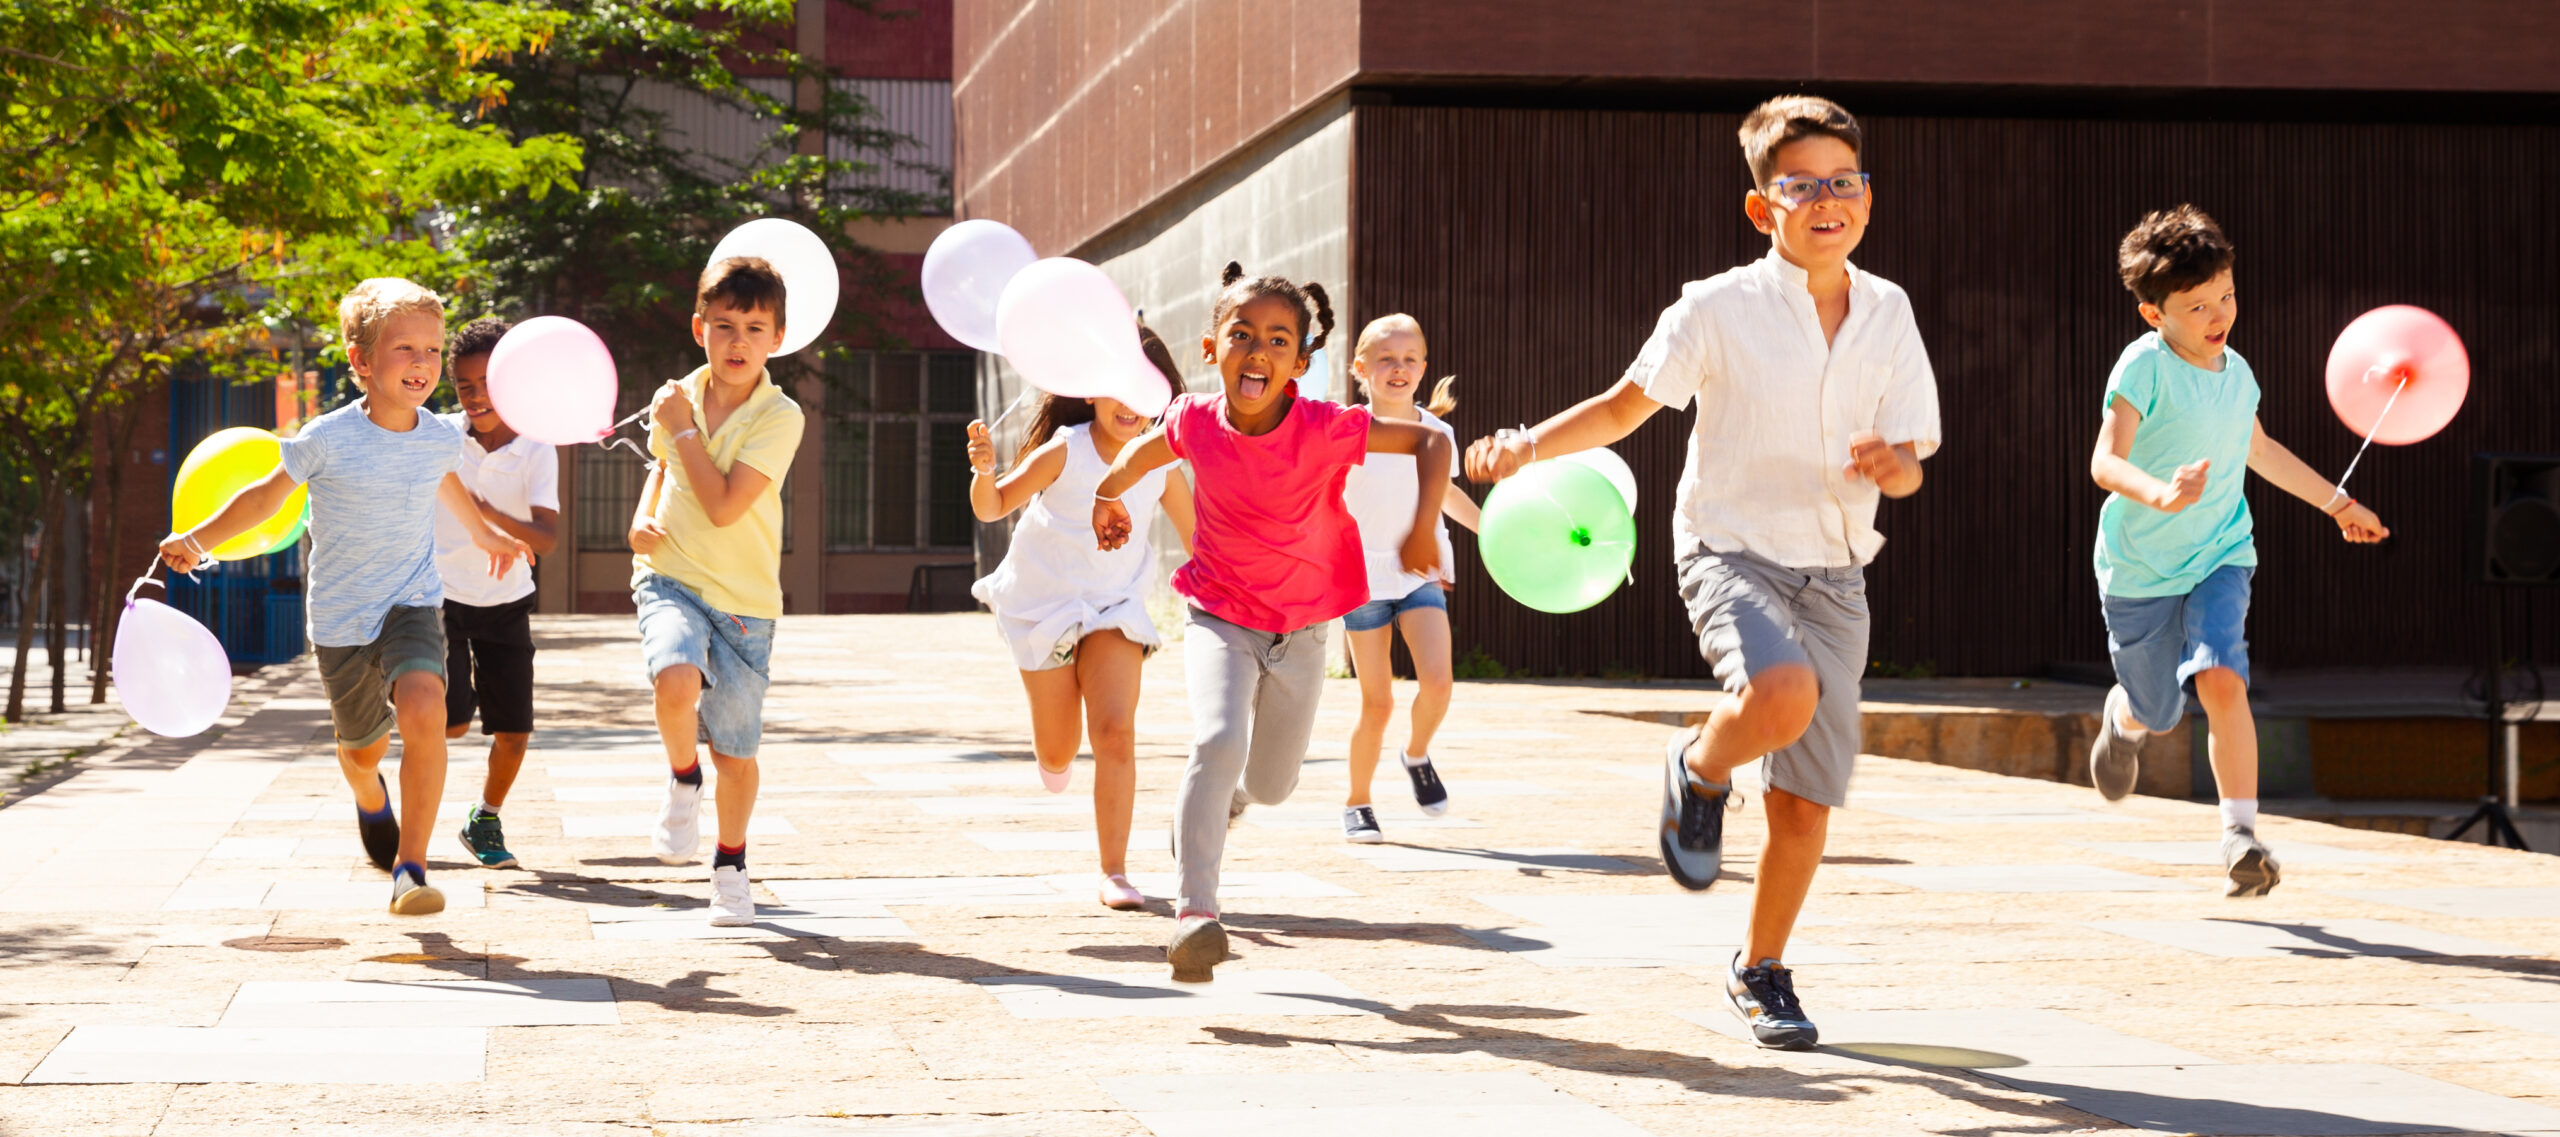 Crianças felizes com balões correm na rua da cidade de verão